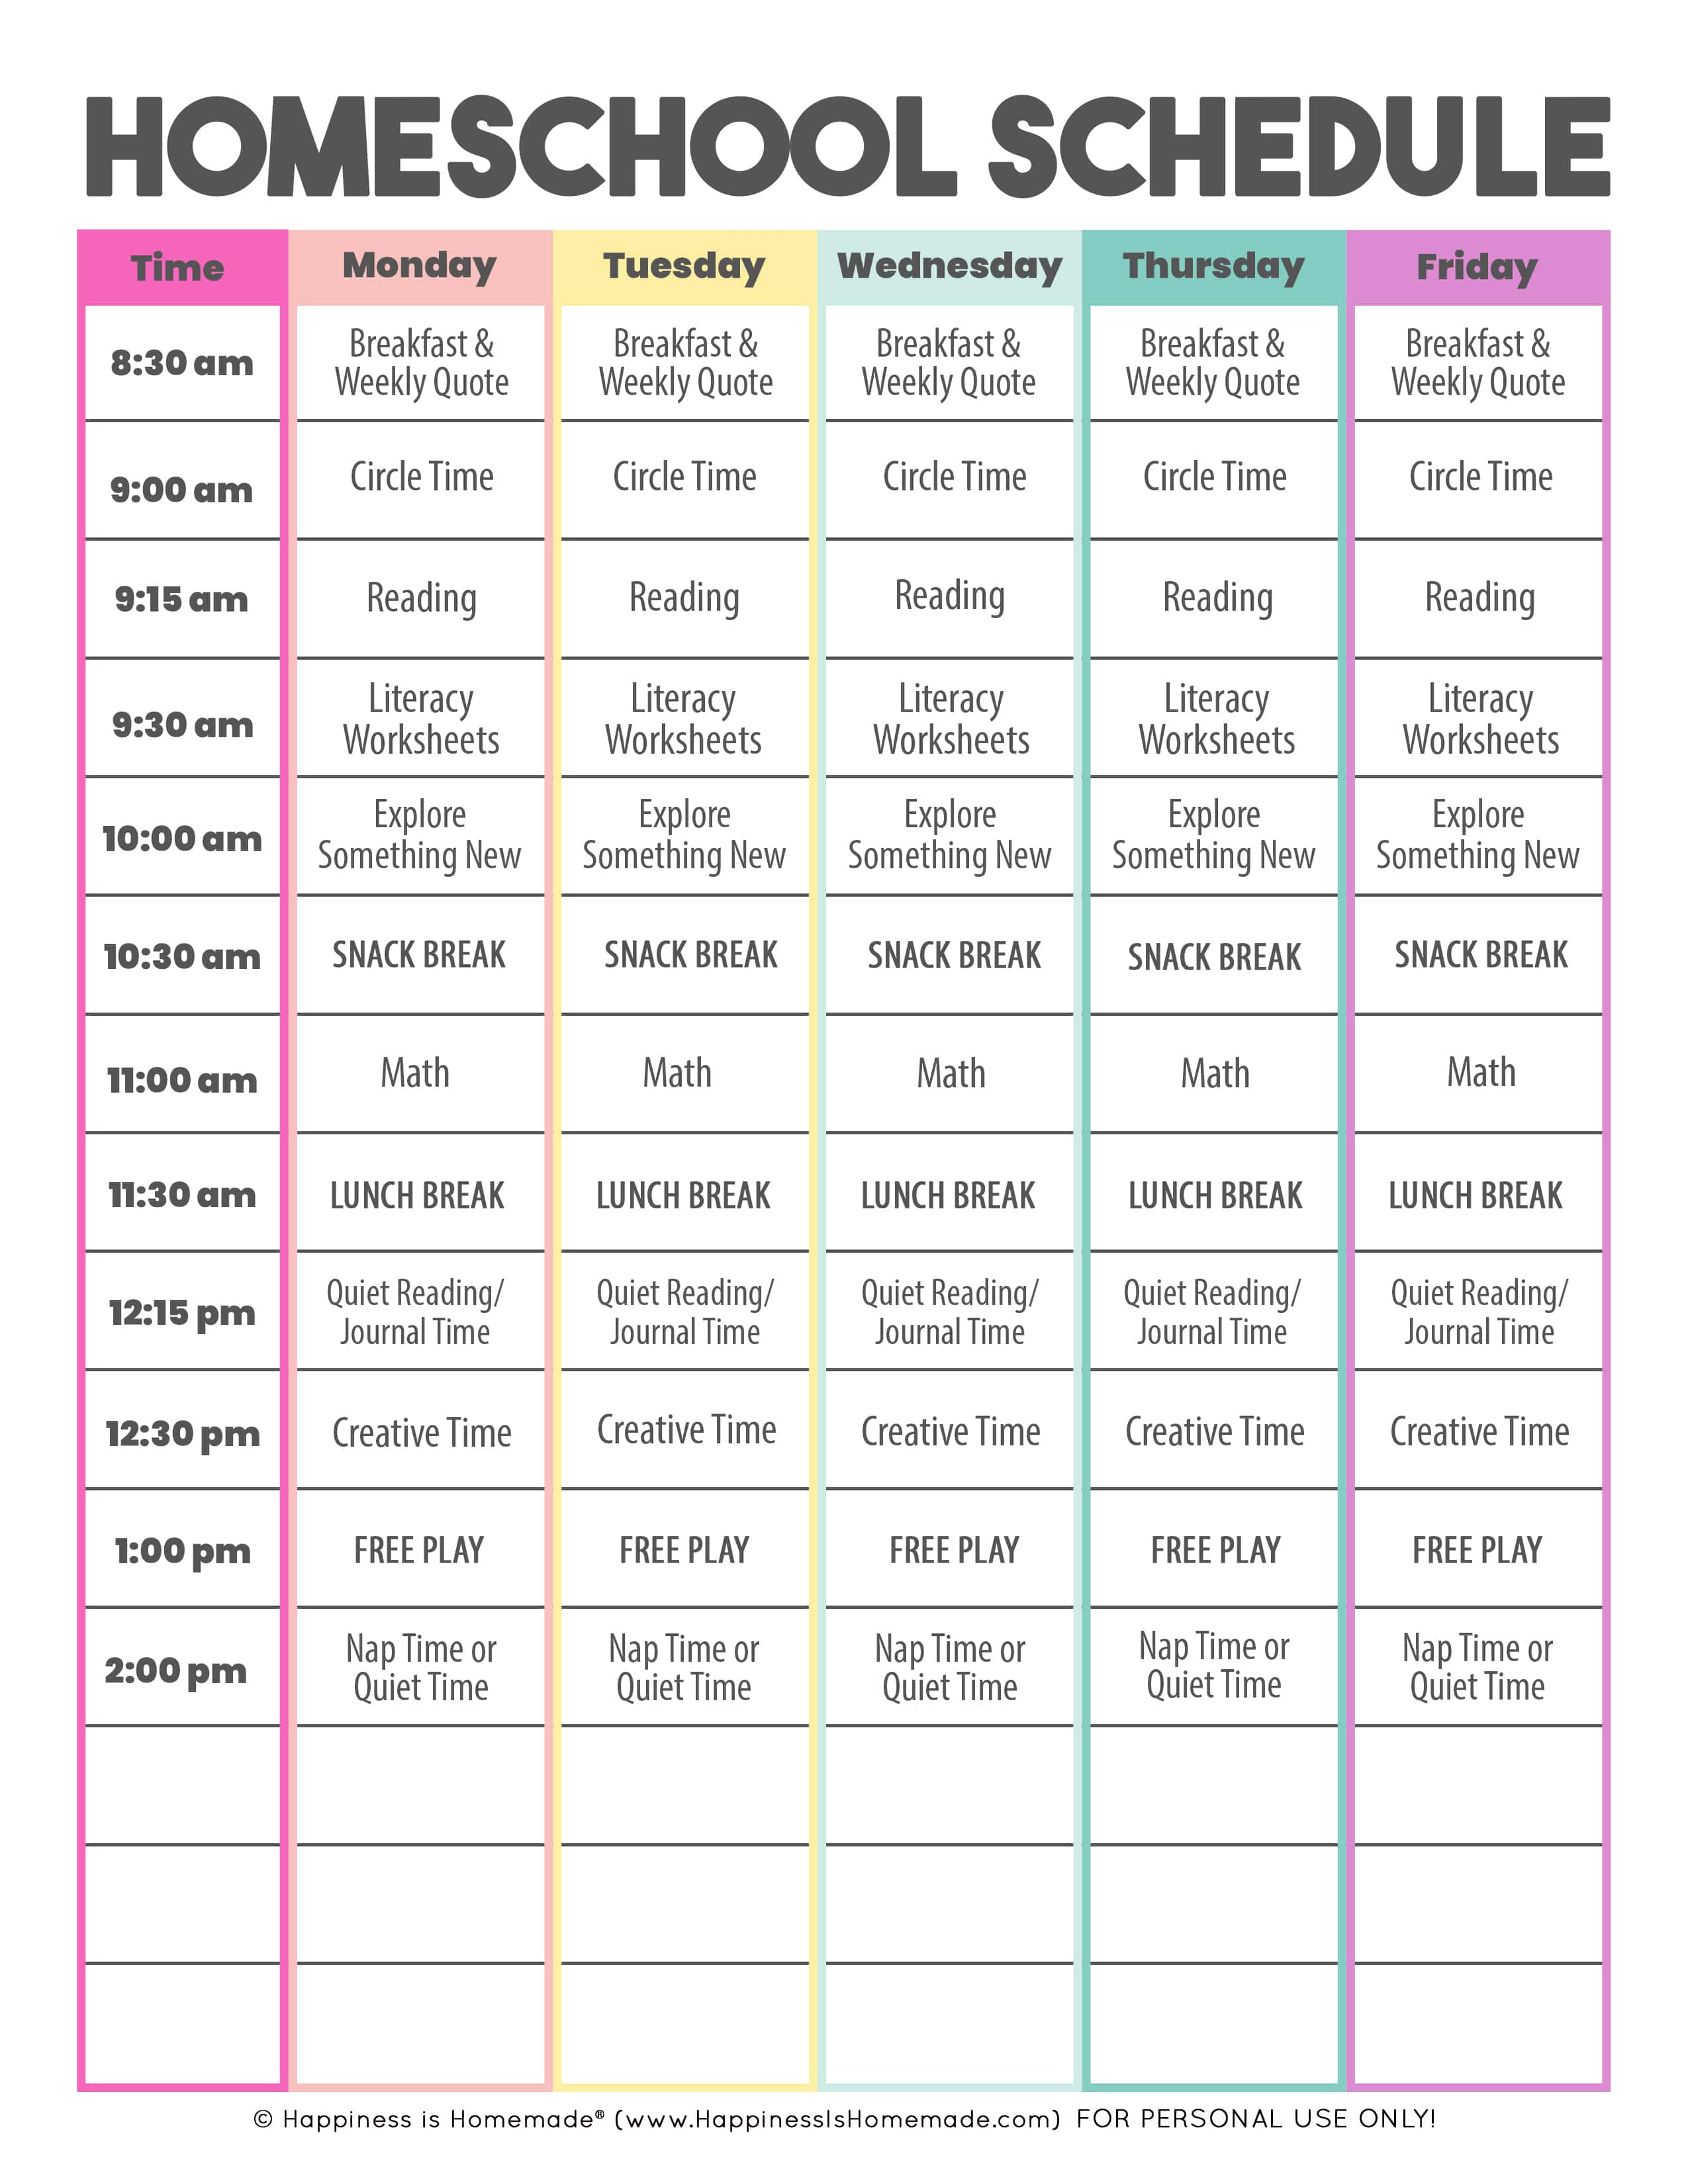 Sample kindergarten homeschool schedule - daily and weekly